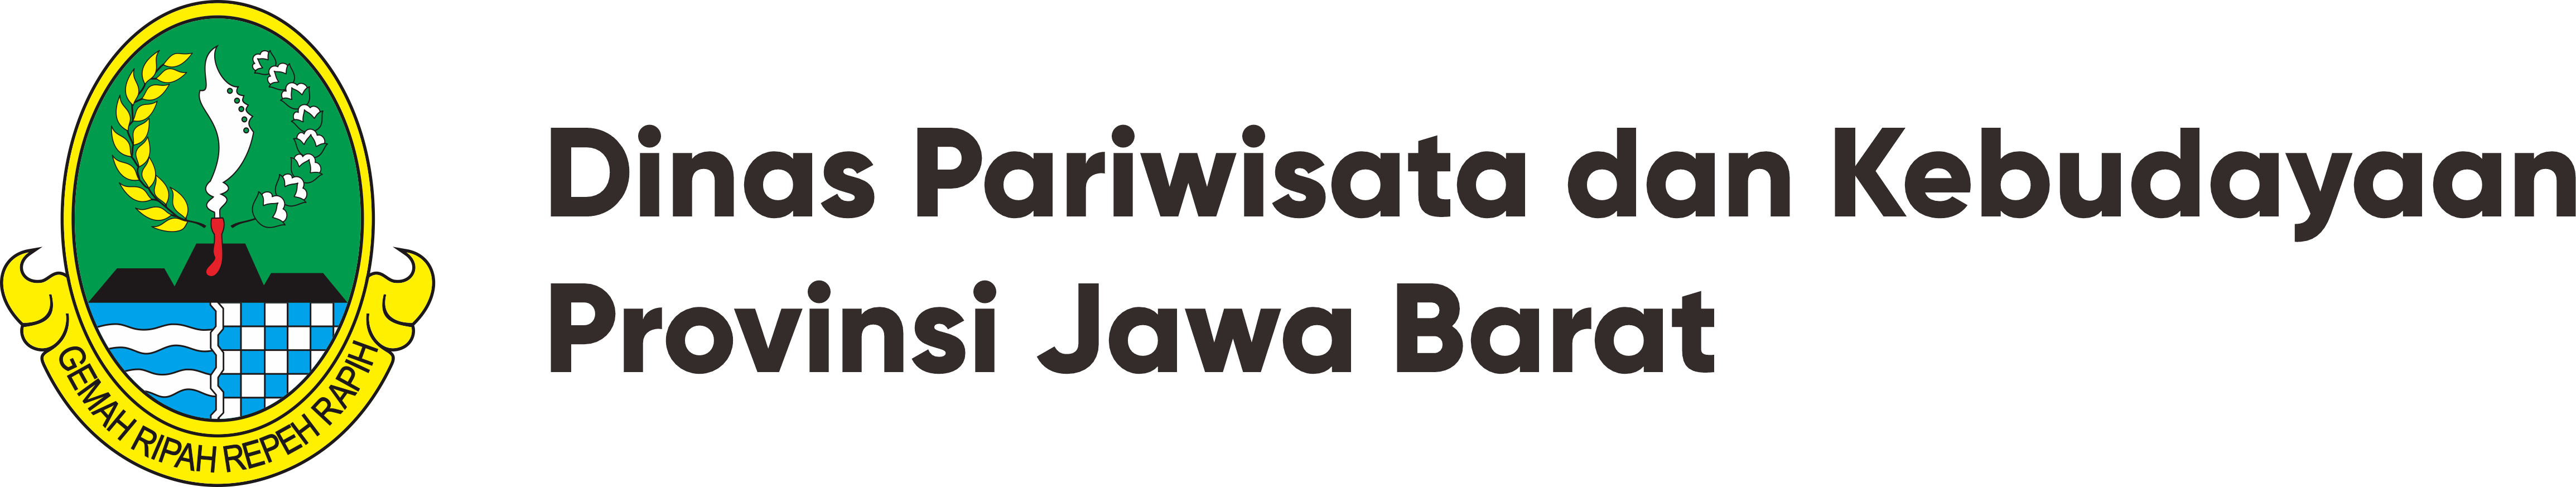 DISPARBUD - Situs Dinas Pariwisata dan Kebudayaan Provinsi Jawa Barat